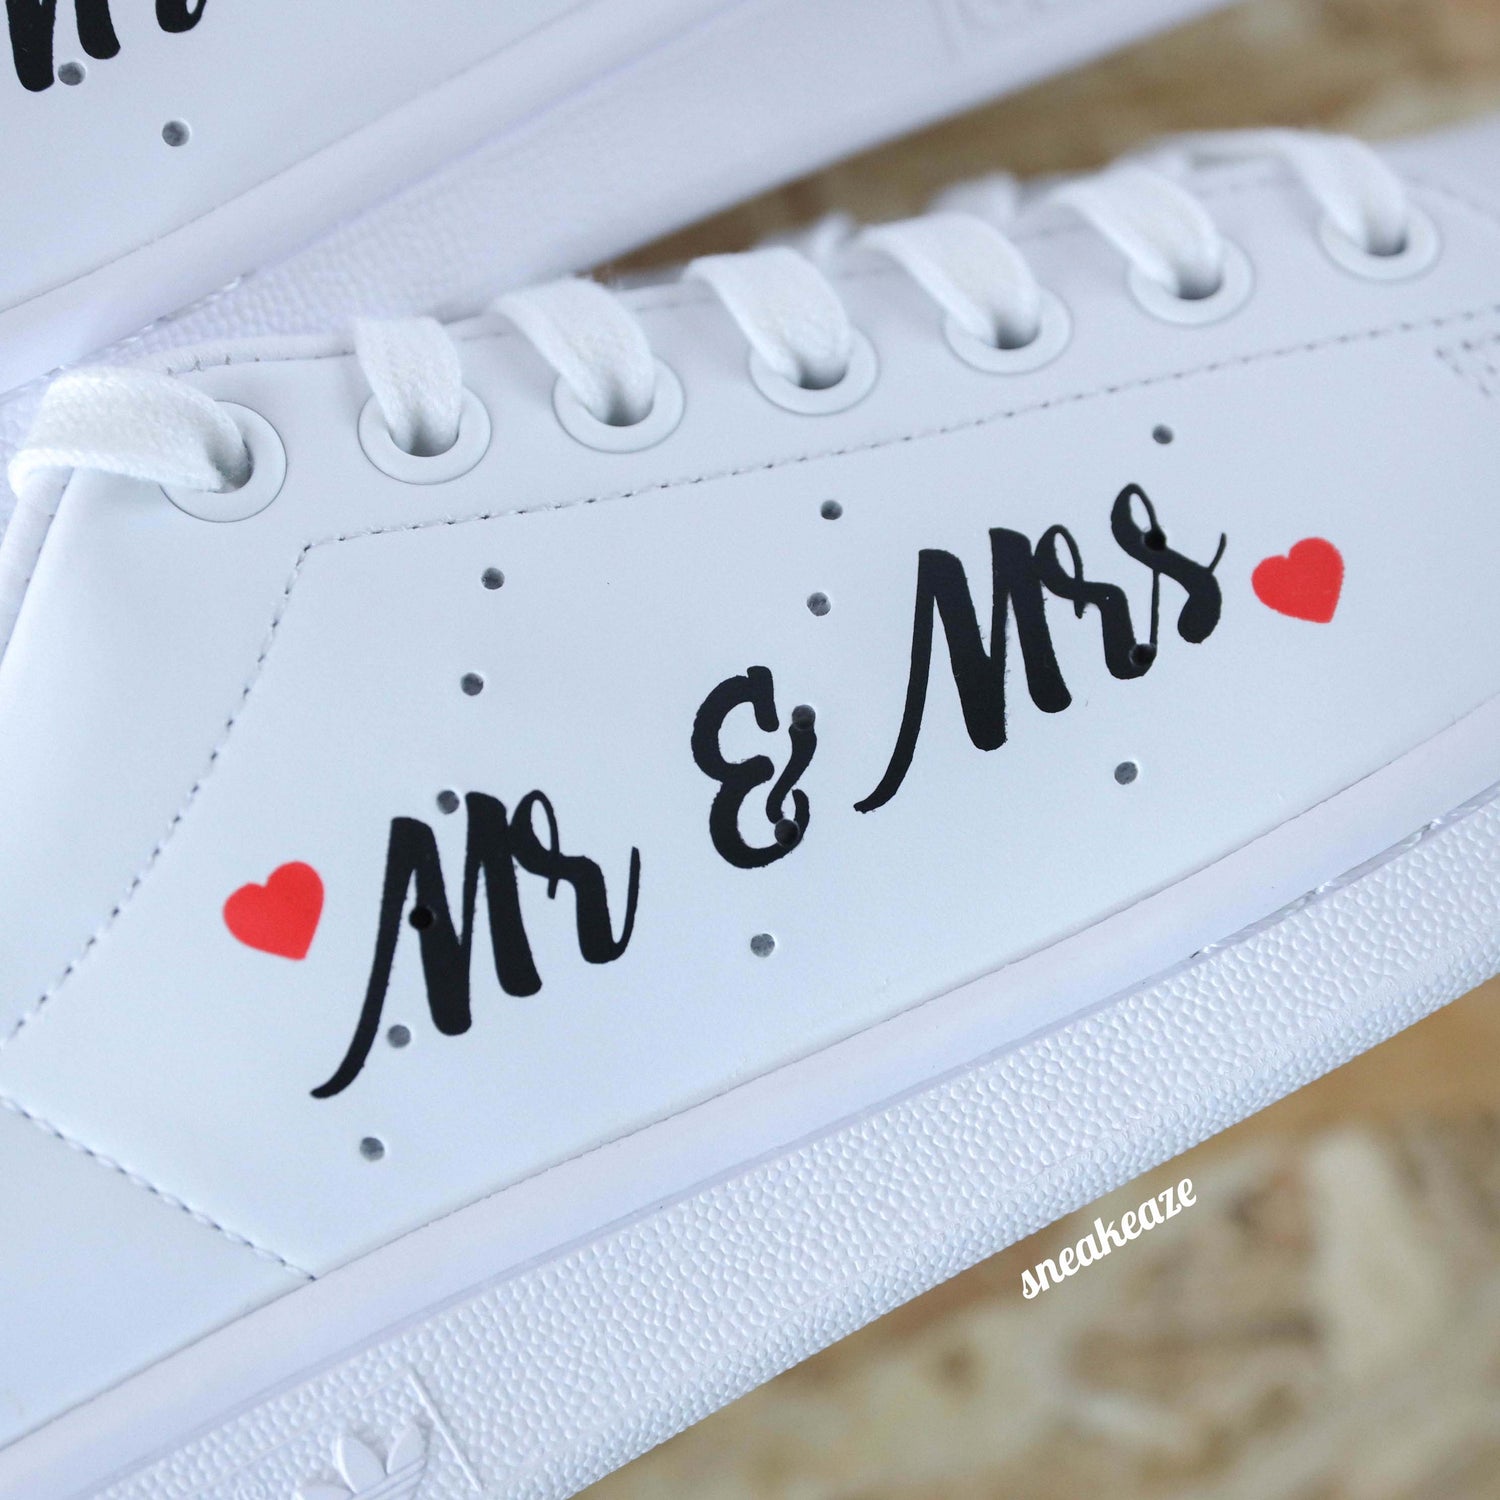 baskets Adidas stan smith custom mariage mr & mrs wedding sneakeaze customs skz